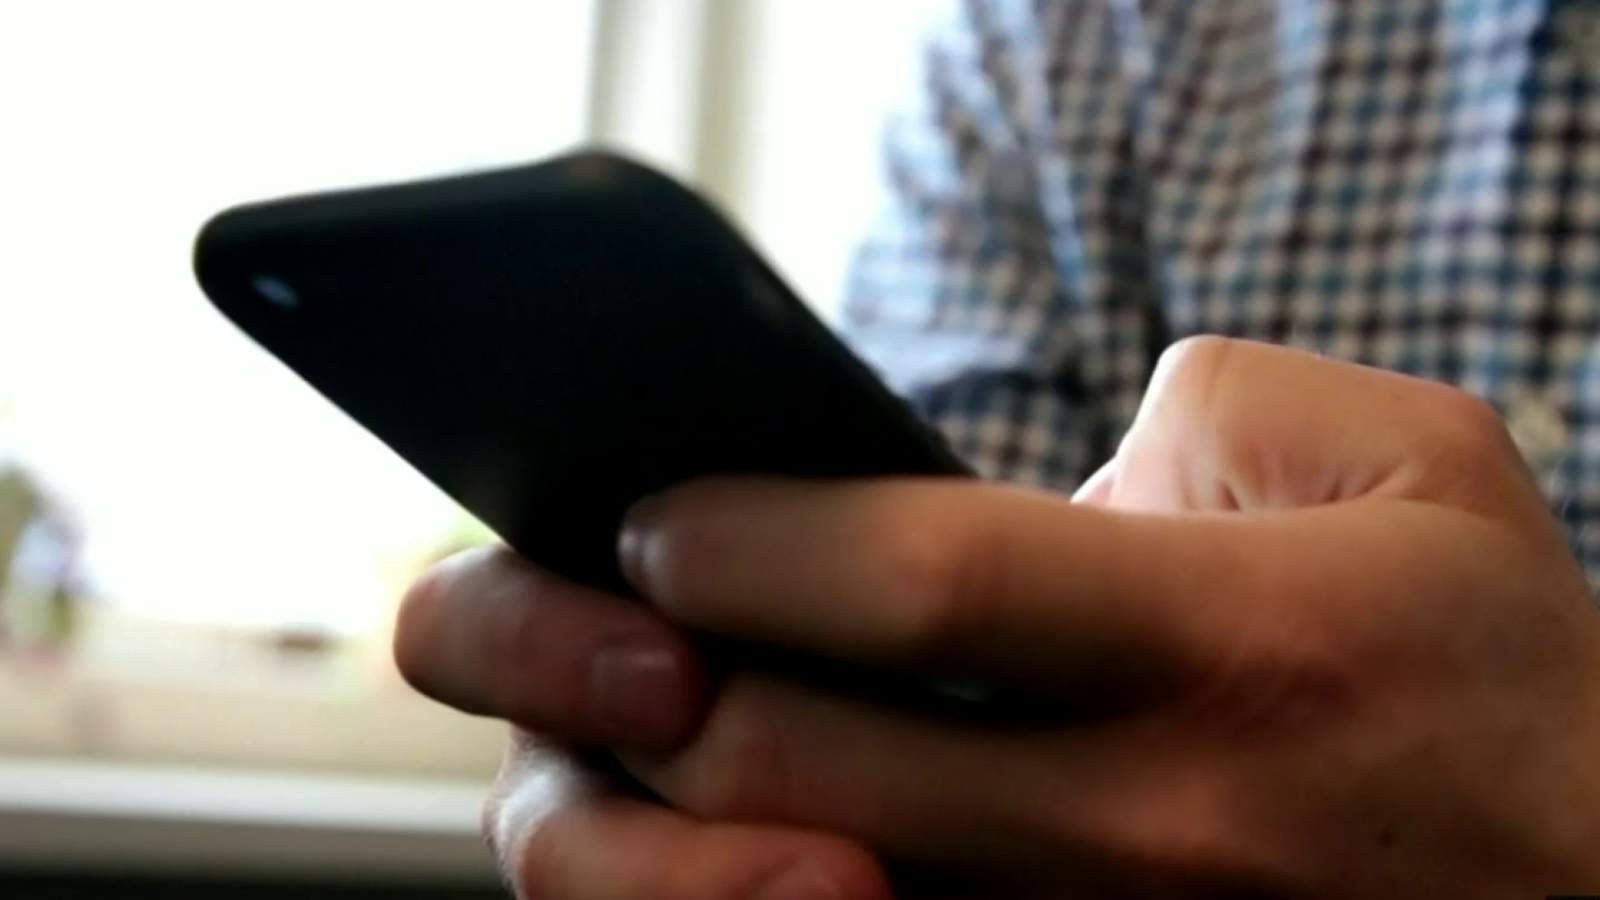 Consumer Alert: Beware of COVID-19 texting scam